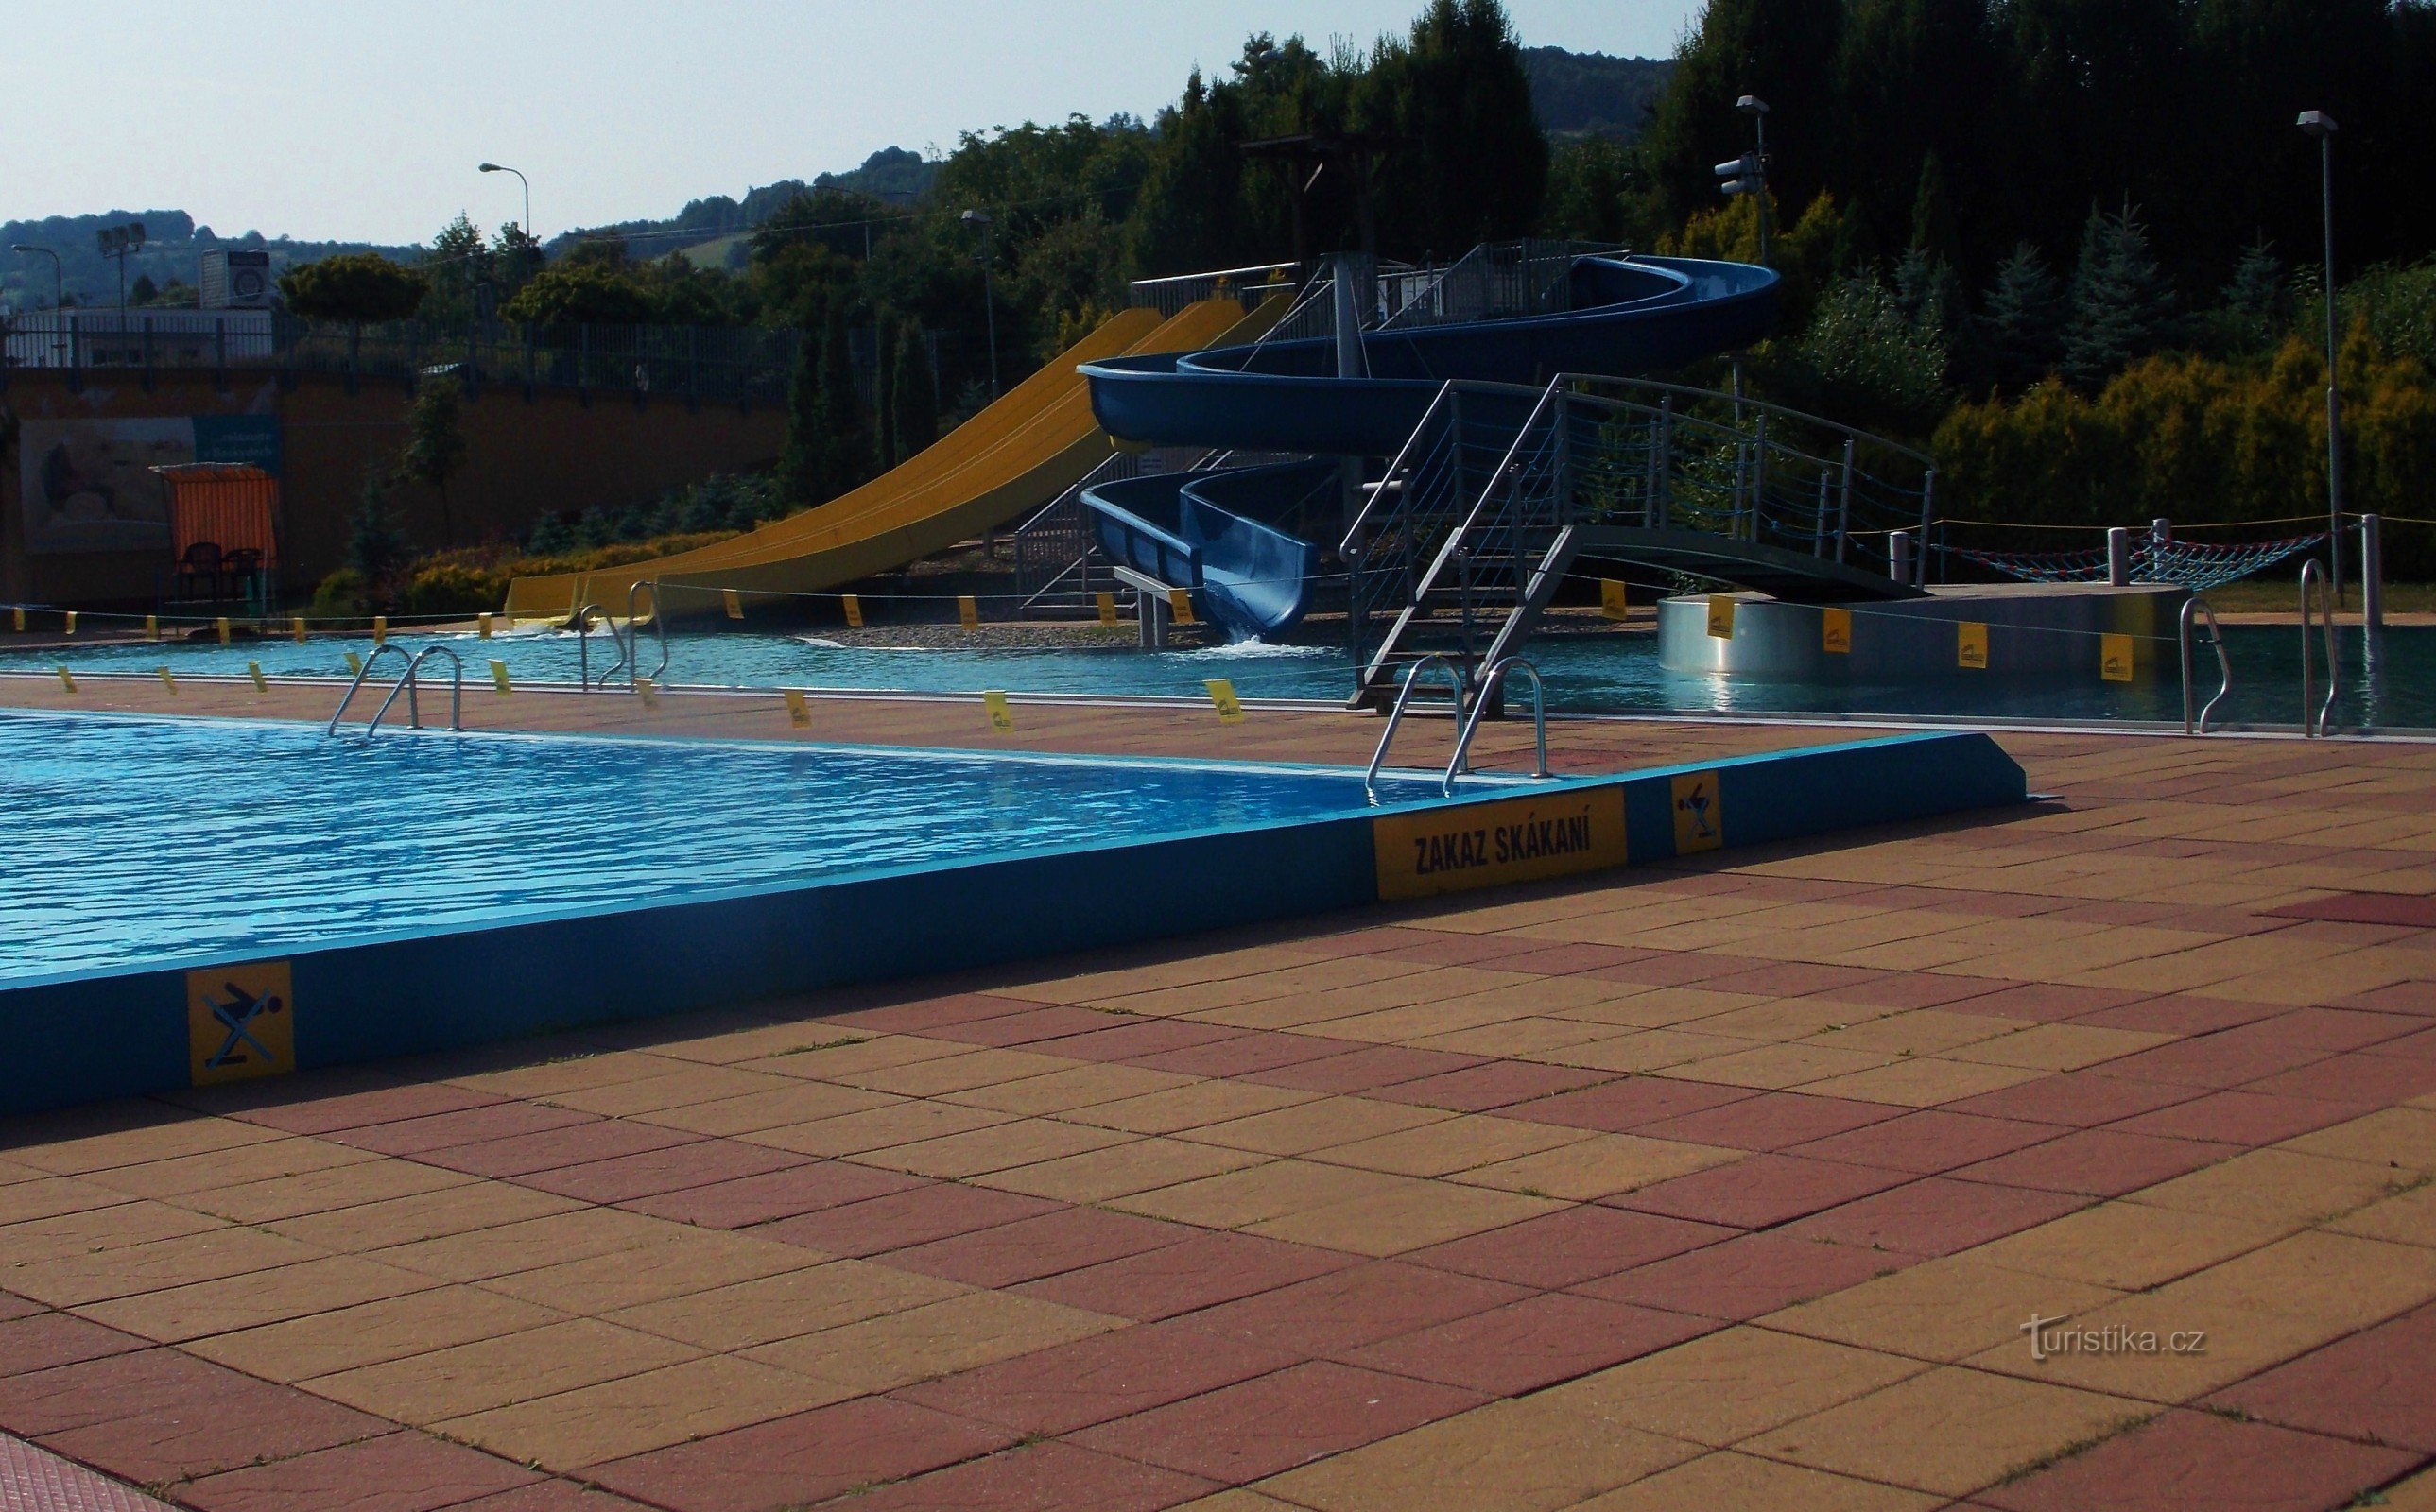 Efter svømning i den grønne swimmingpool i Zlín